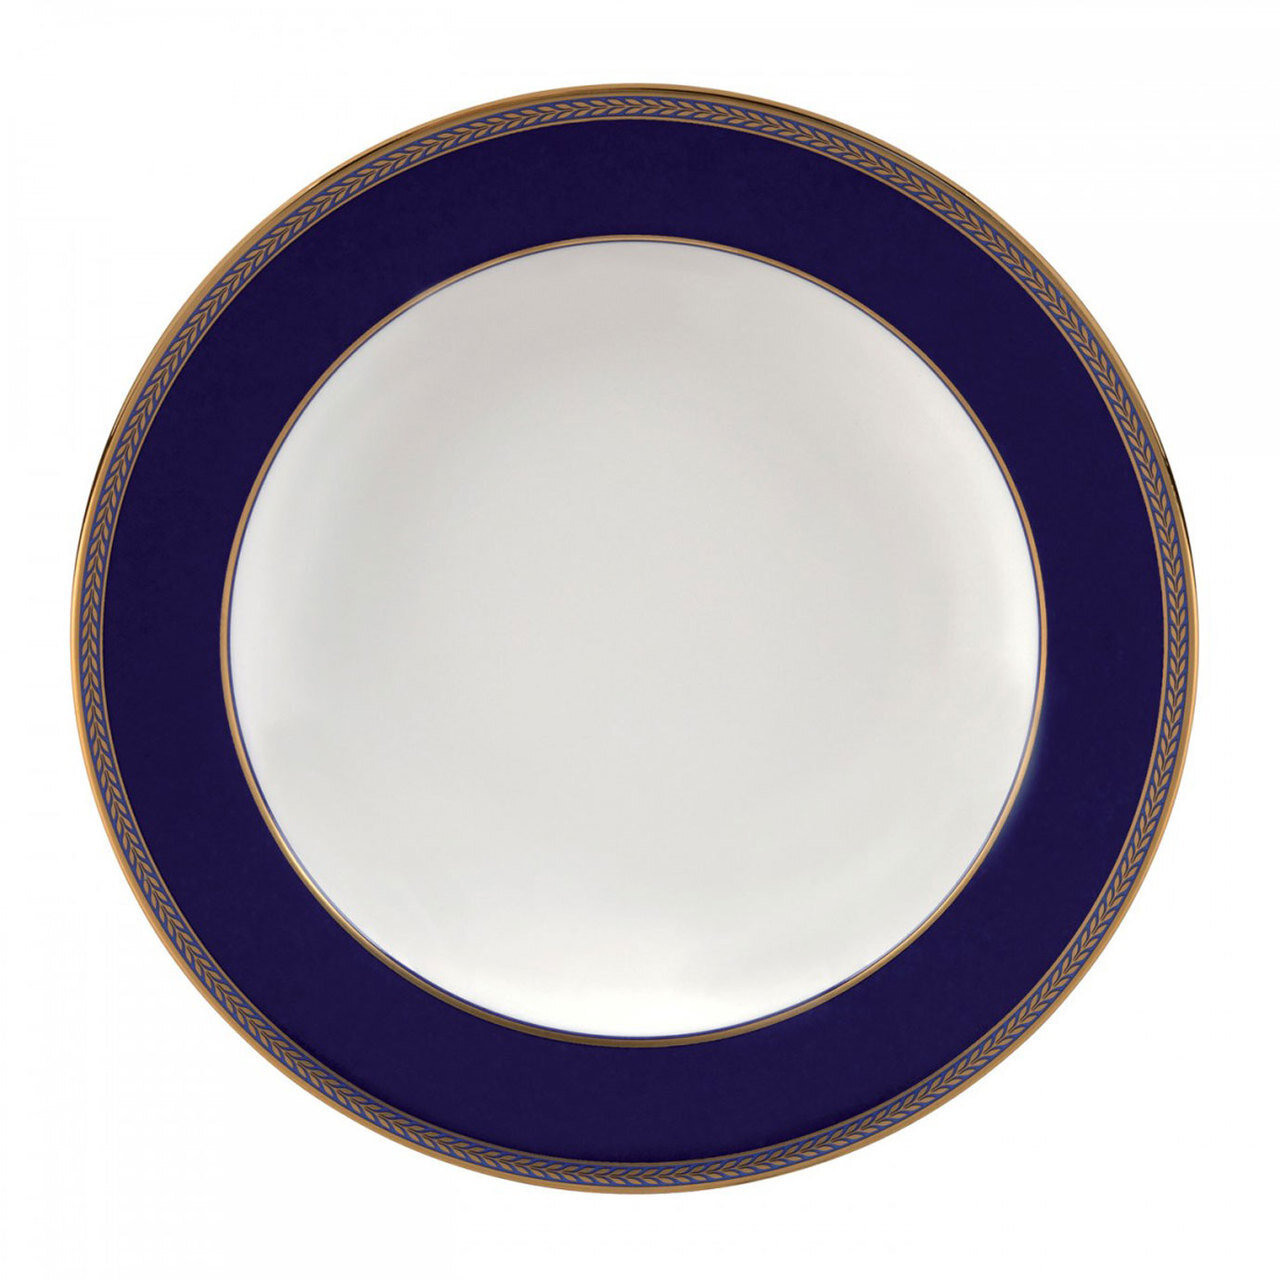 Wedgwood Renaissance Gold Rim Soup Plate 9 Inch